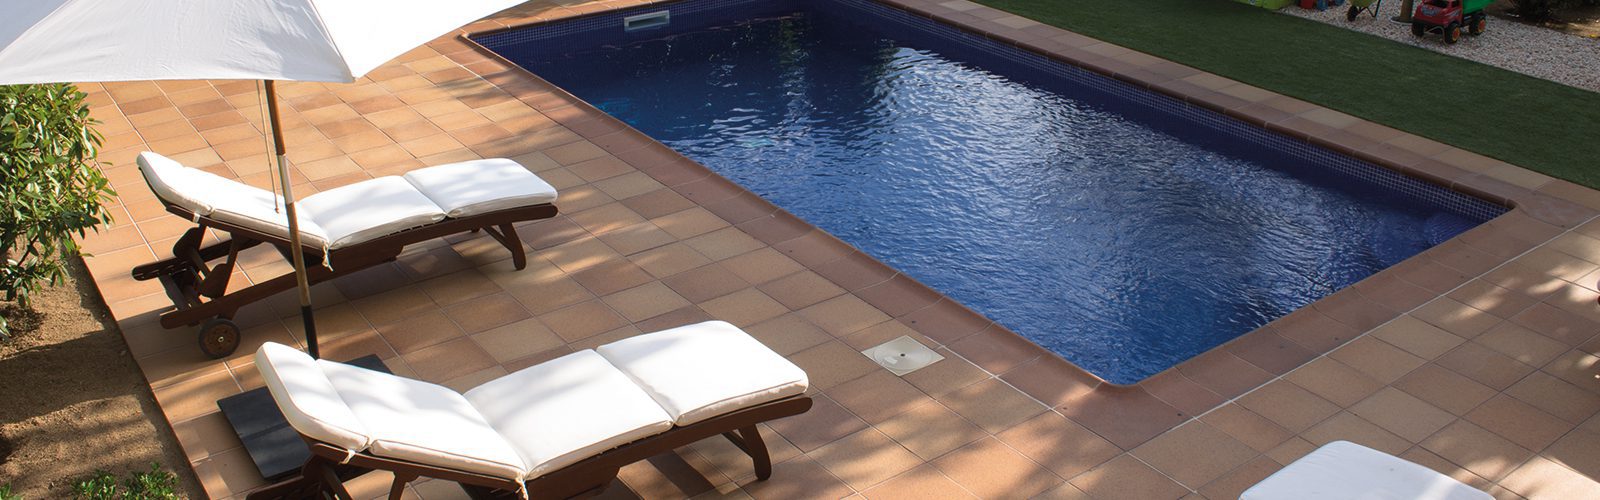 terraza de piscina con gres natural rústico TERRAKLINKER -  duradero, antideslizante y resistente a las sales